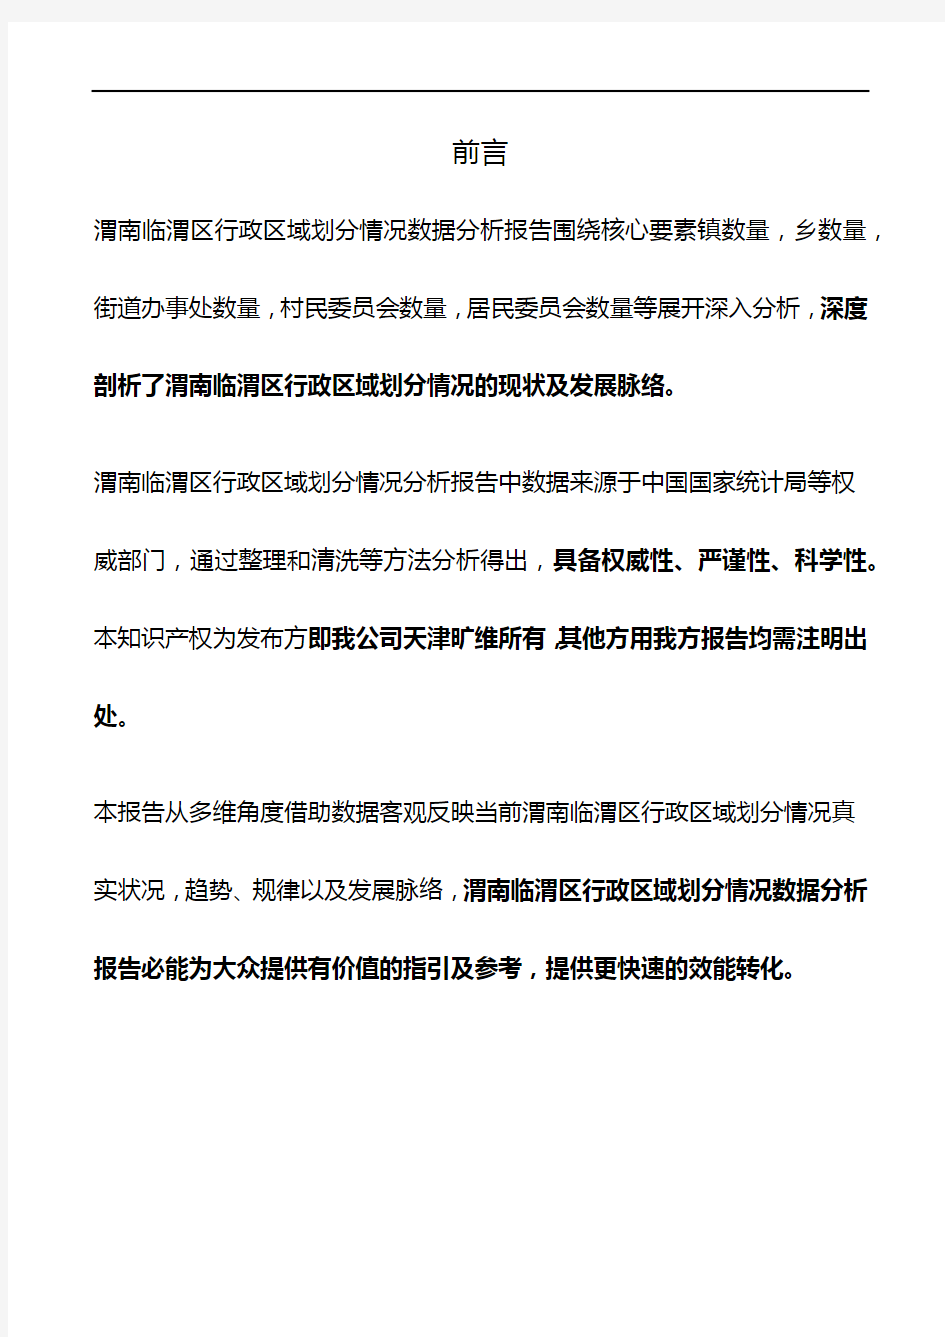 陕西省渭南临渭区行政区域划分情况3年数据分析报告2020版